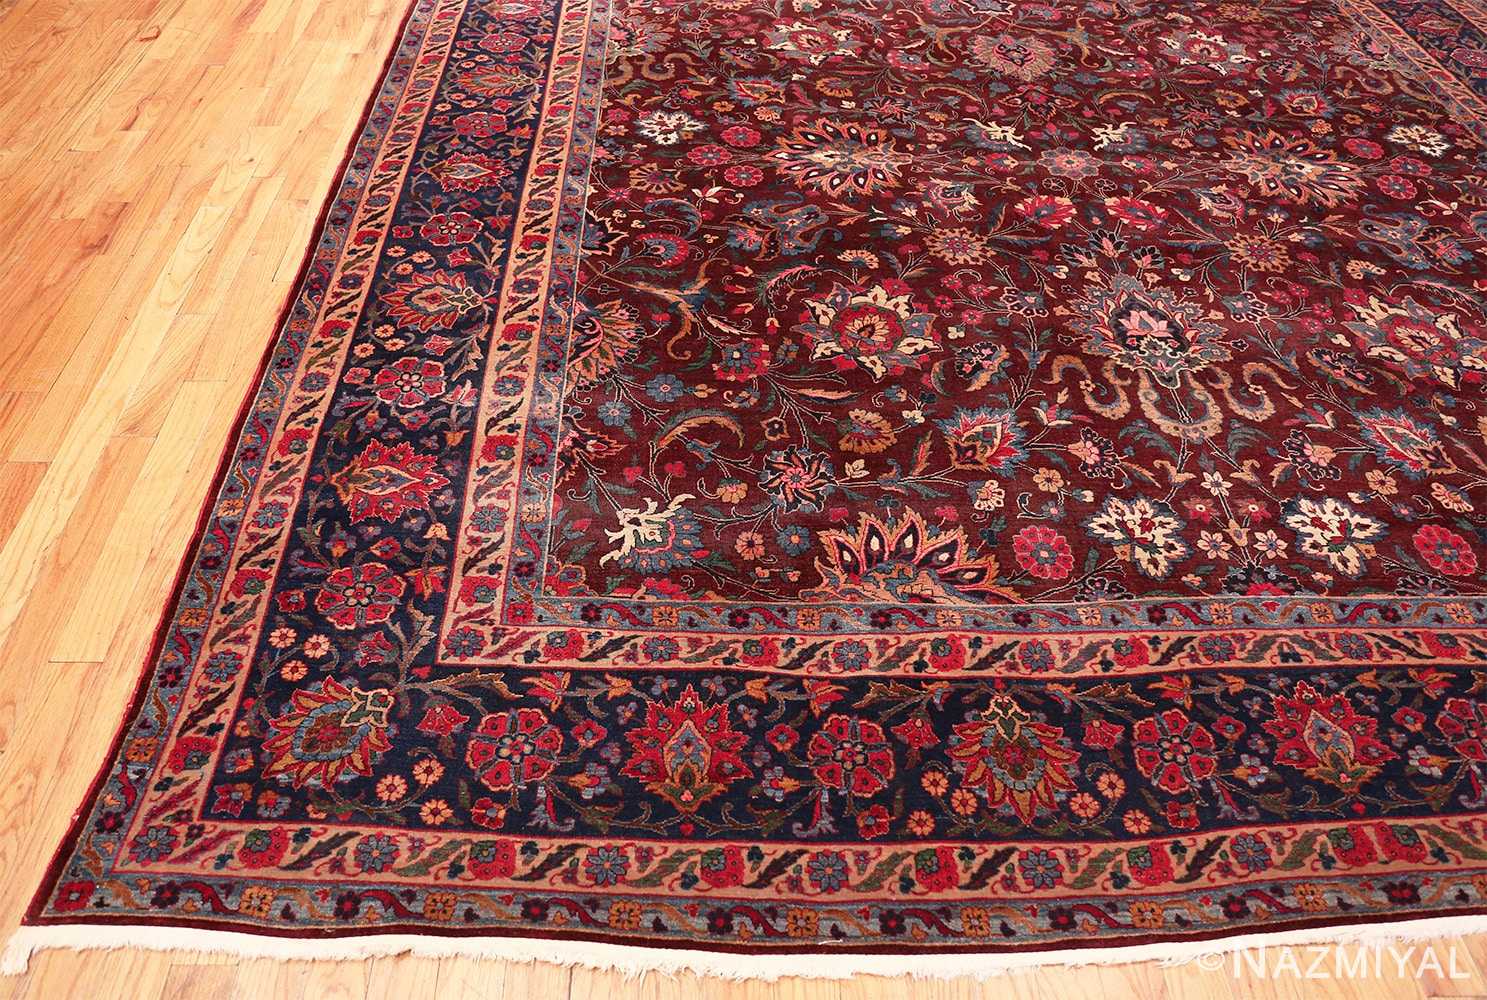 Corner Aubergine Antique Persian Kerman rug 44830 by Nazmiyal